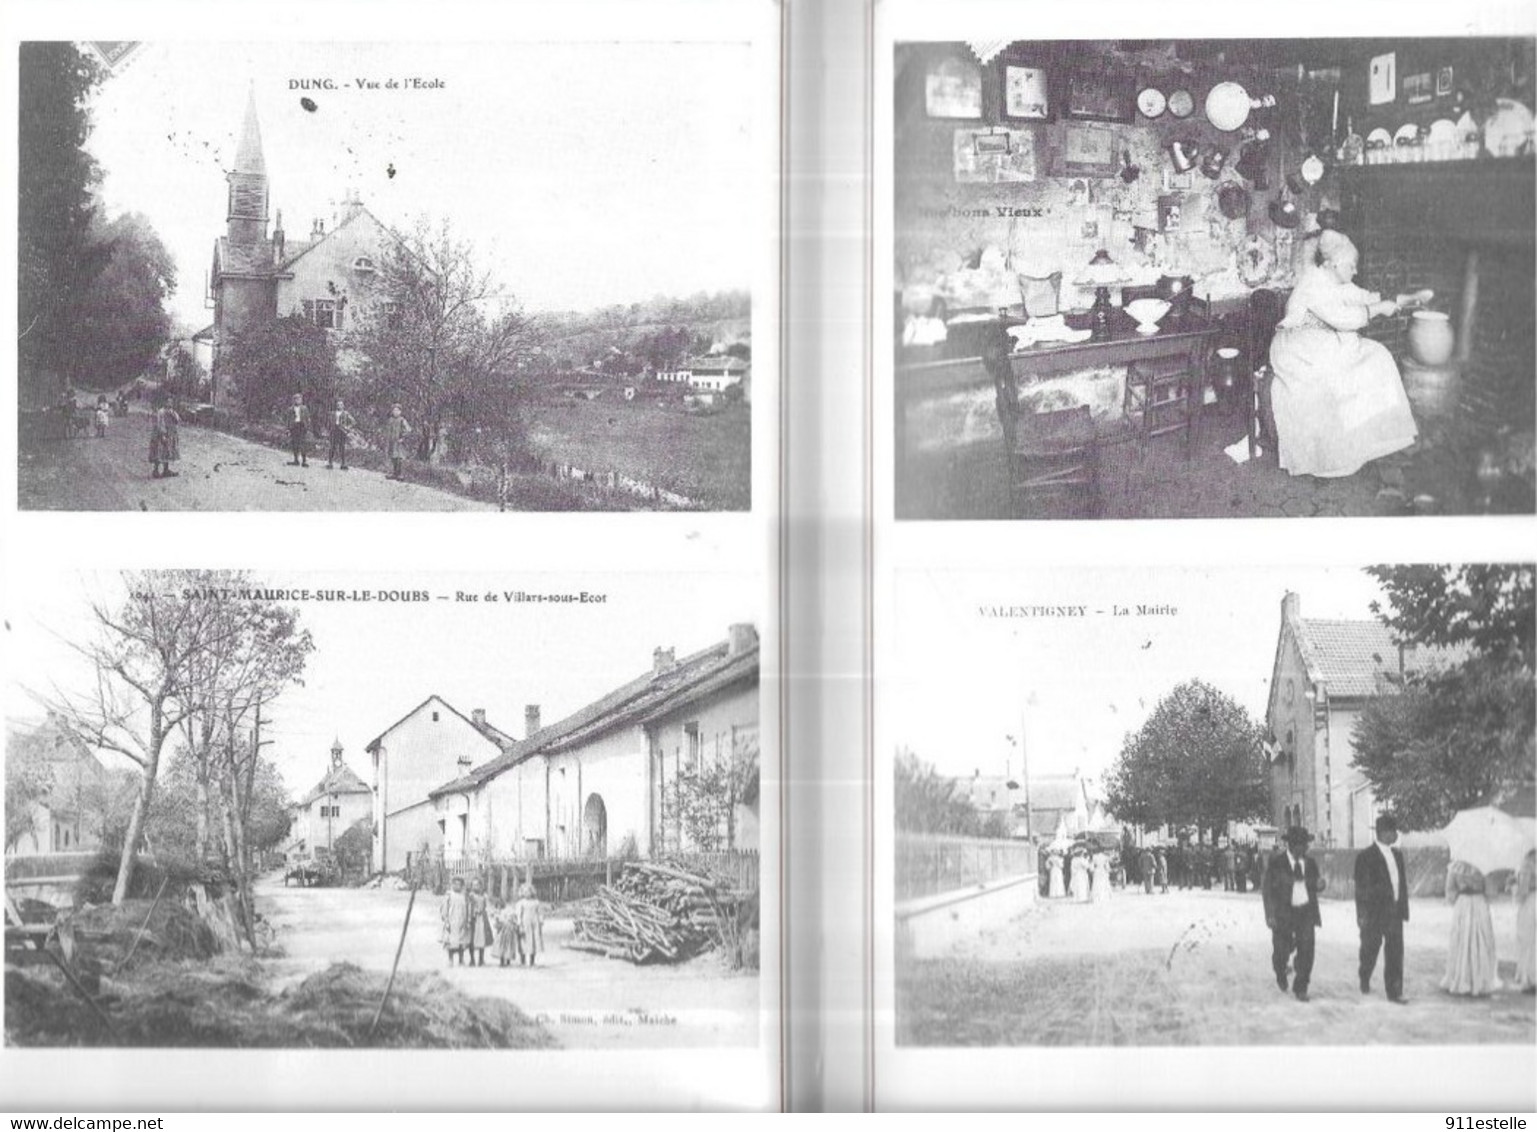 25  Livre " Le Pays De Montbéliard D' Autrefois "par G. Baudoin Et A.Convercy. Edité En 1981 - Franche-Comté